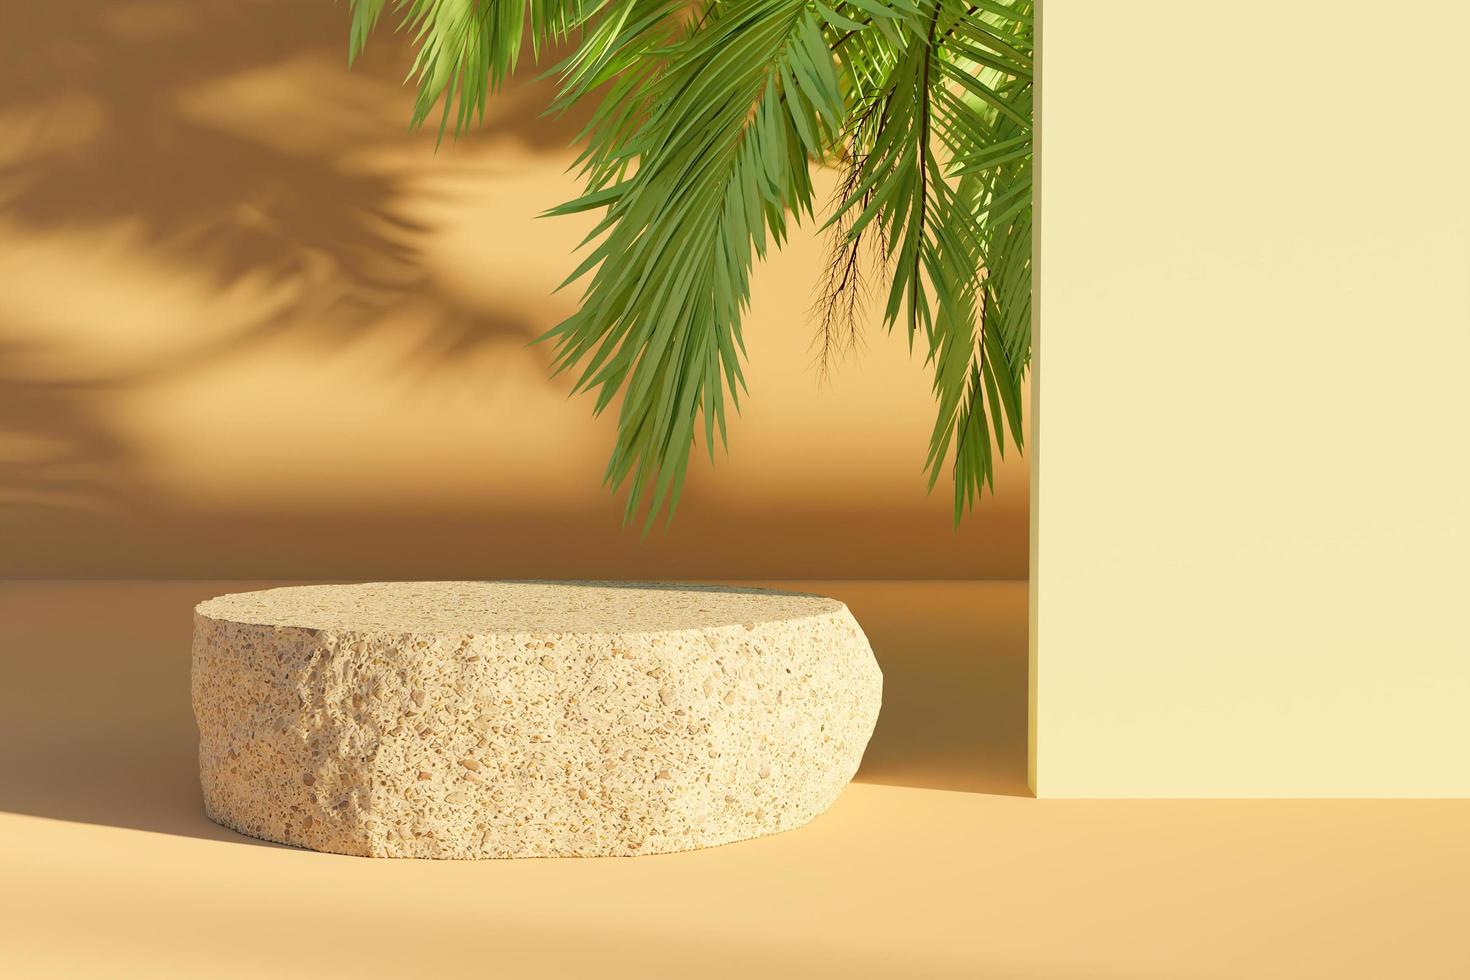 tillplattad sten för produktpresentation med palmblad som kikar ut och gör skuggor, 3d-rendering foto